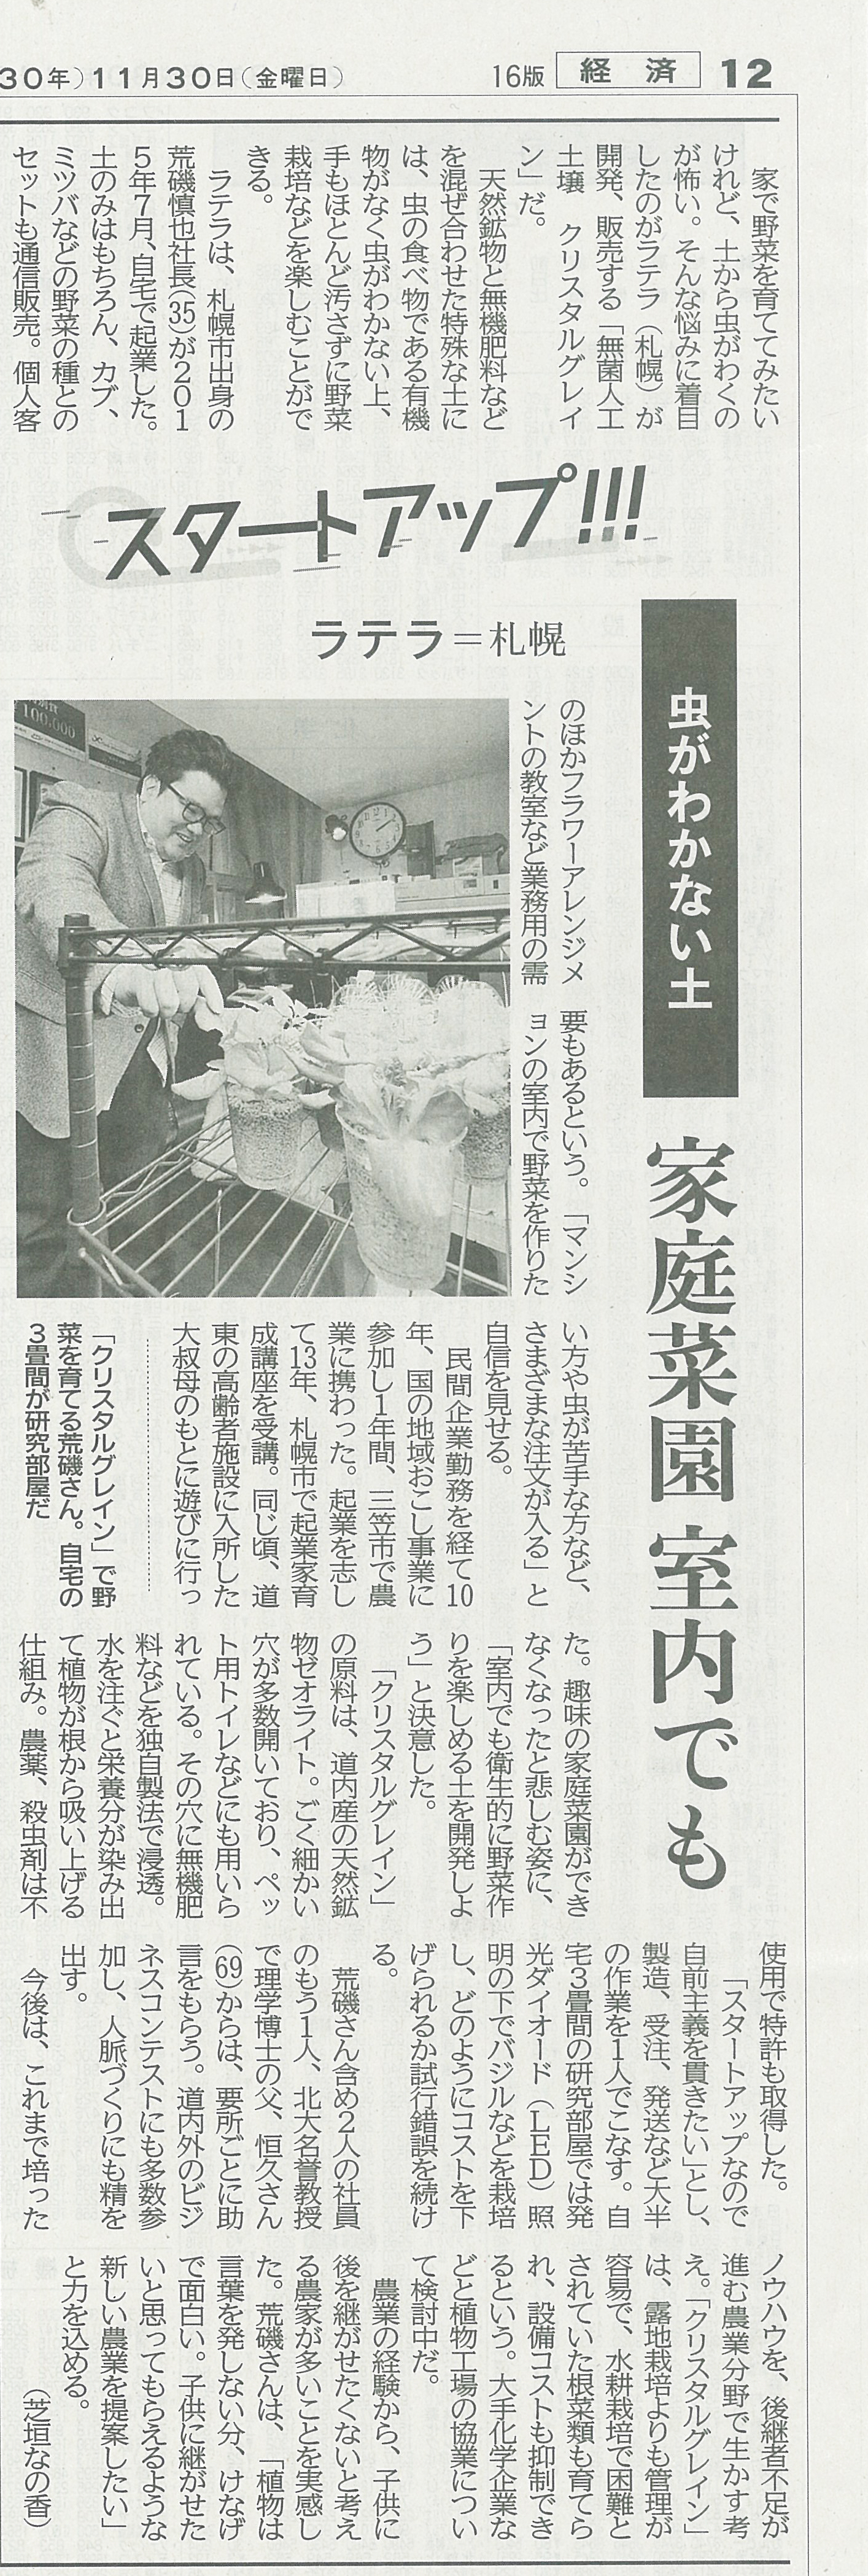 2018.11.30北海道新聞朝刊のスタートアップの特集に弊社が紹介されました。